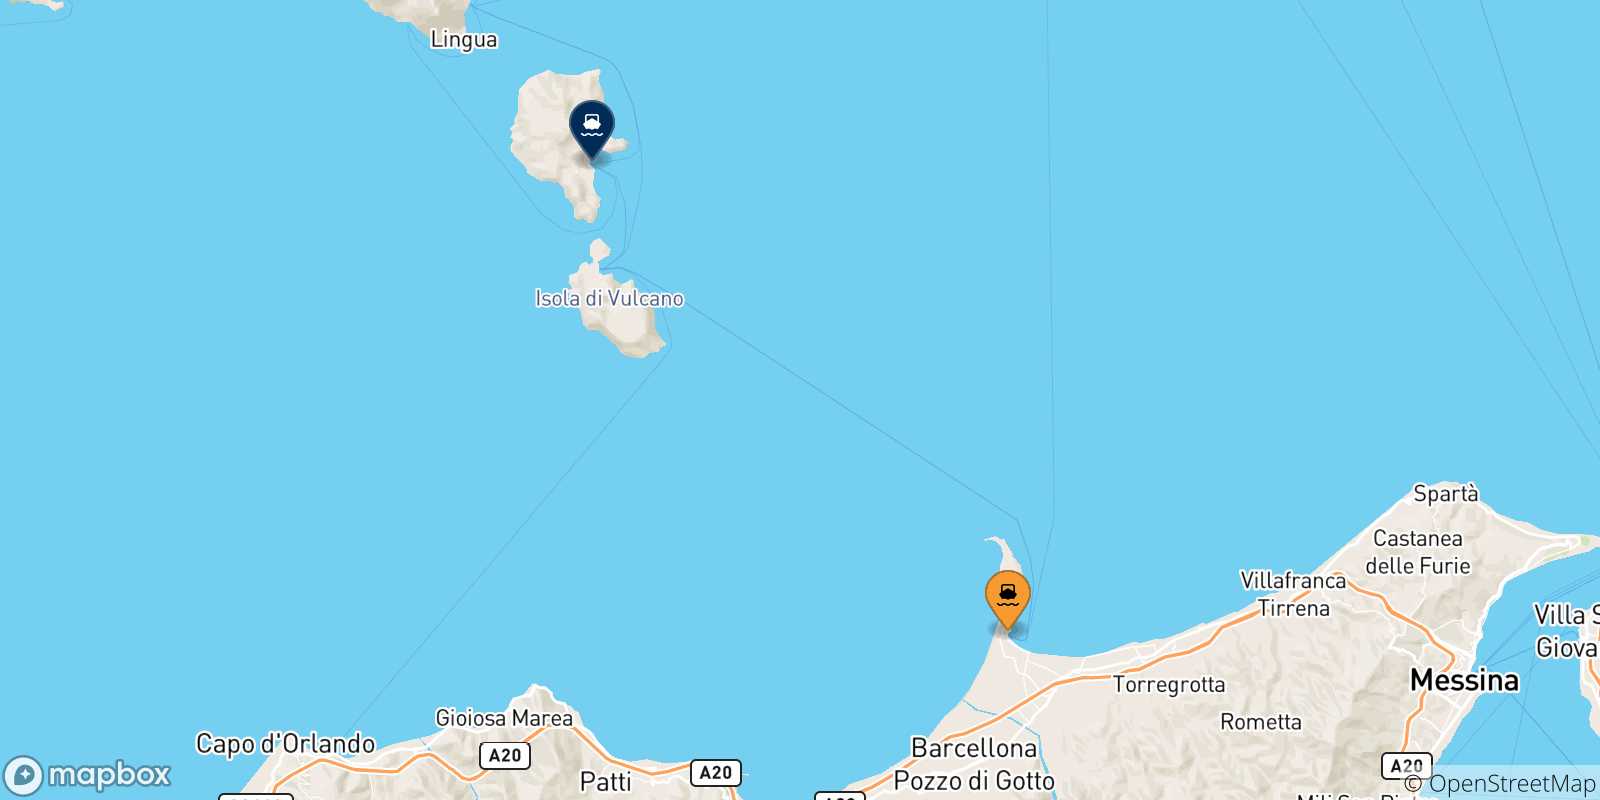 Mappa delle possibili rotte tra la Sicilia e Lipari